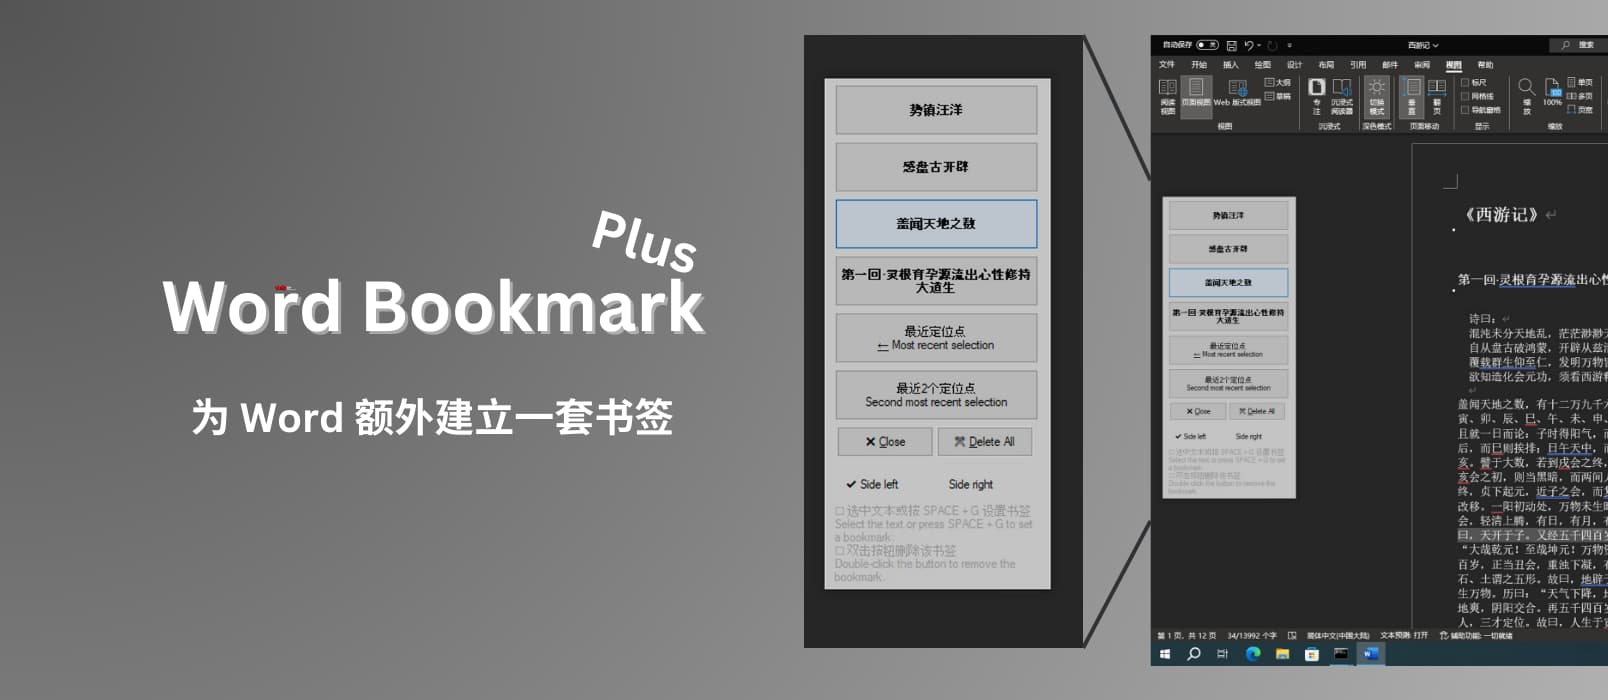 Word Bookmark Plus – 为 Word 额外建立书签，在文档内快速跳转[Windows]